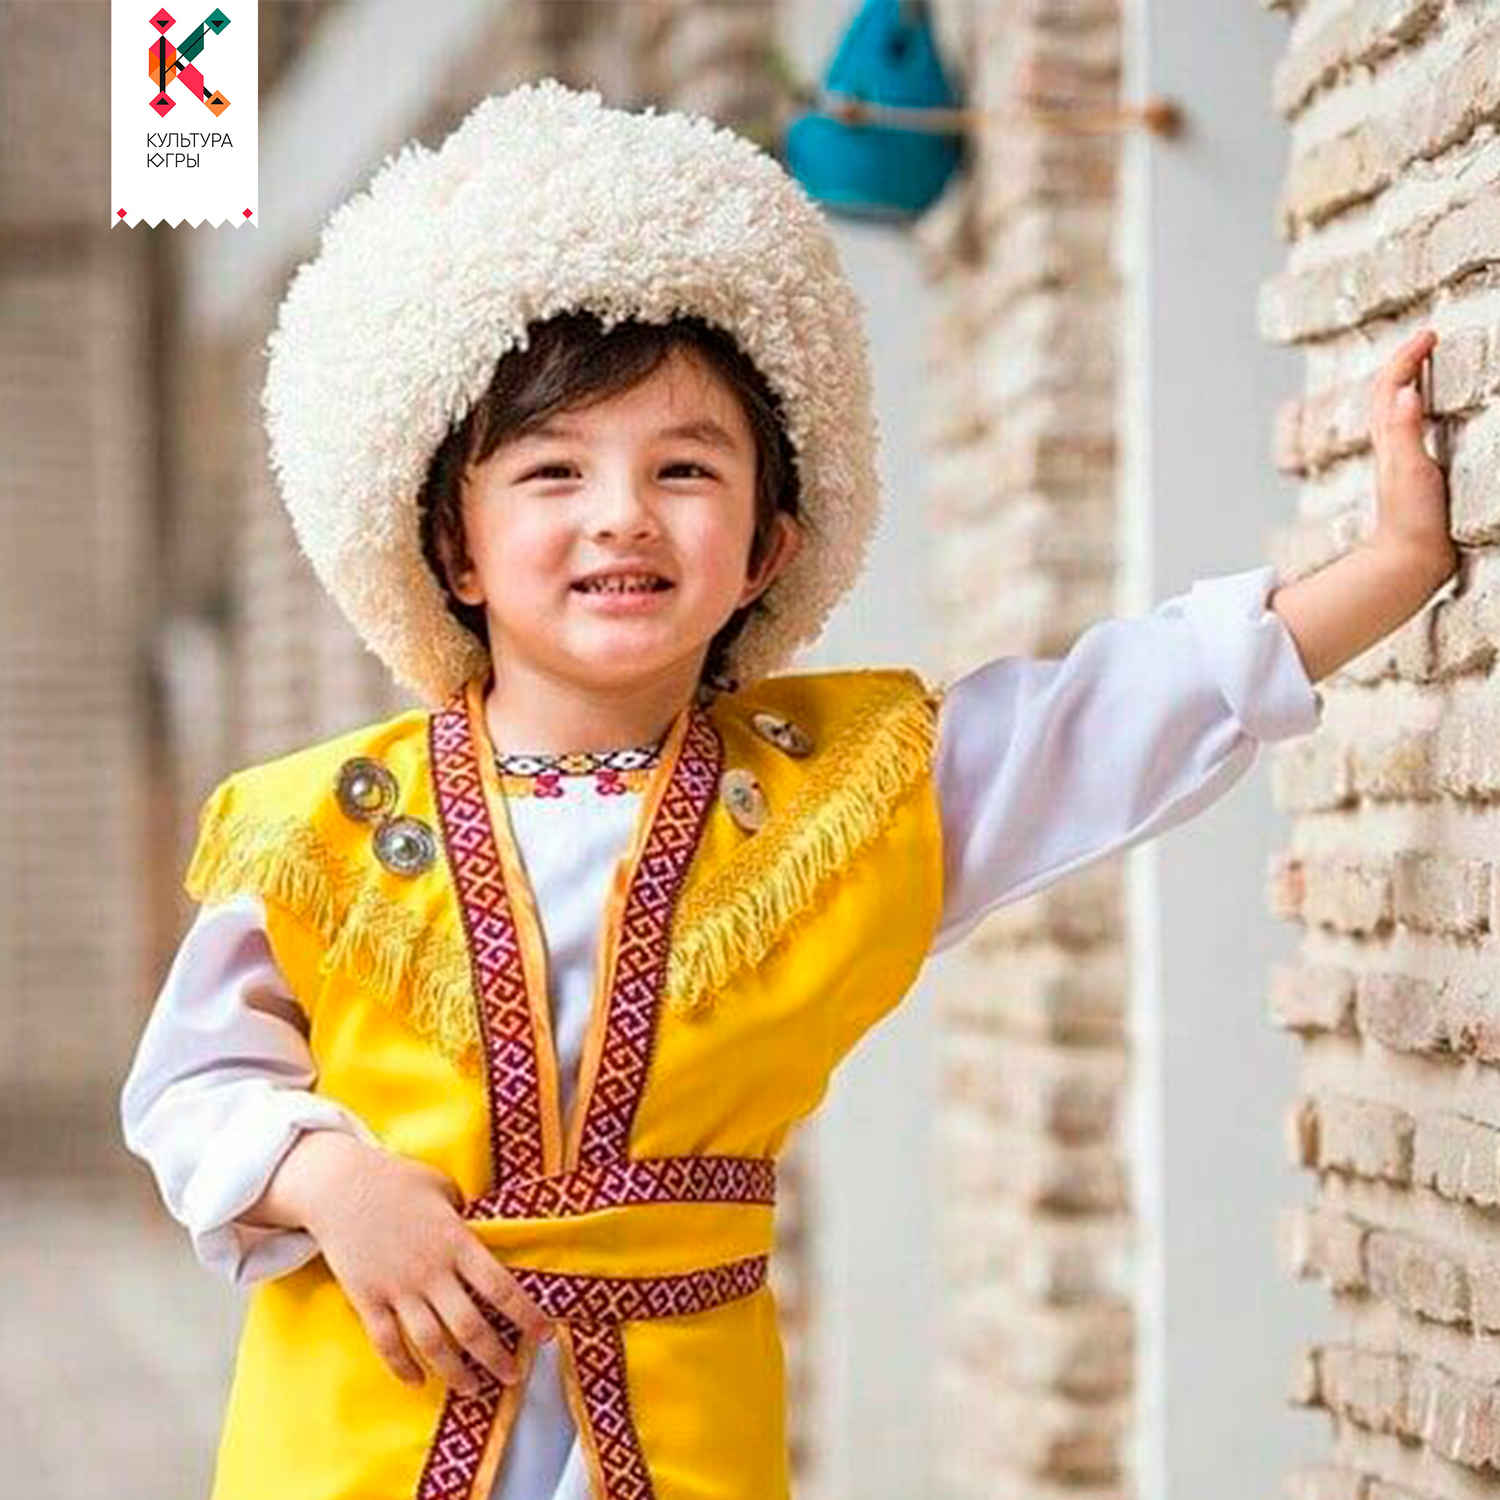 Казахский мальчик мама. Национальный костюм туркменов. Национальный костюм Туркменистана мужской. Туркменский костюм мужской. Мальчик в национальном костюме.